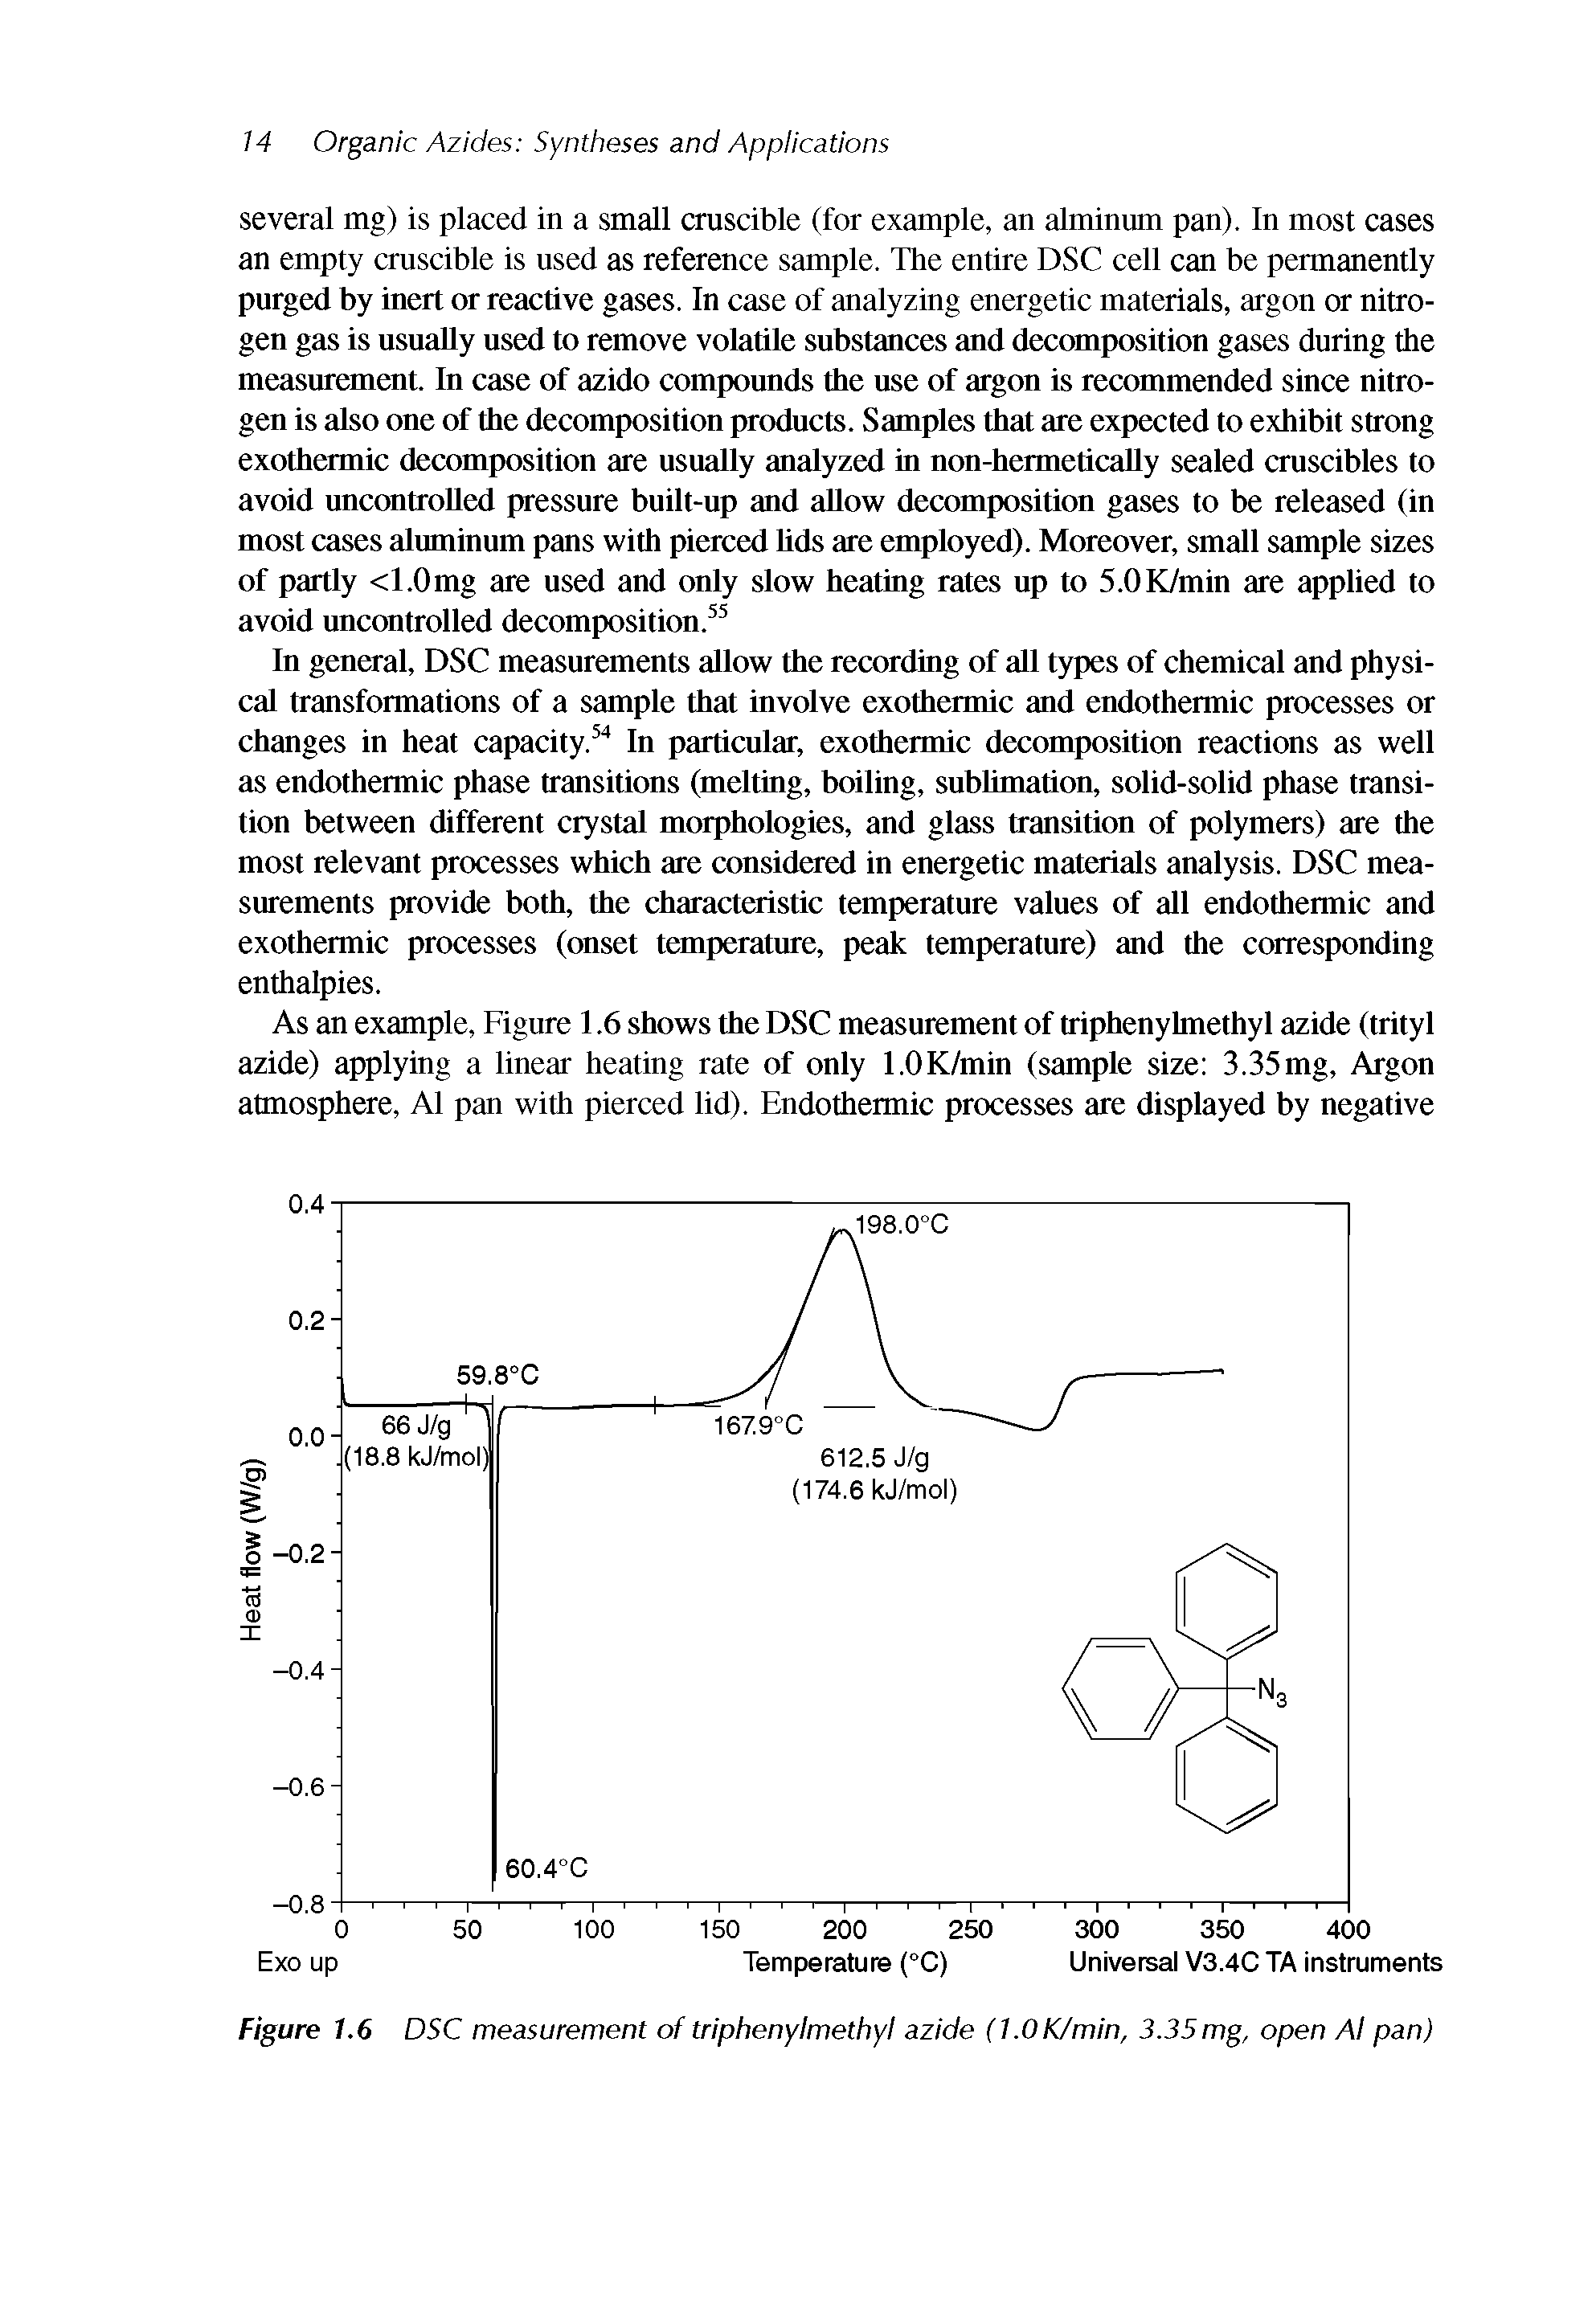 Figure 1.6 DSC measurement of triphenylmethyl azide (l.OK/min, 3.35mg, open Al pan)...